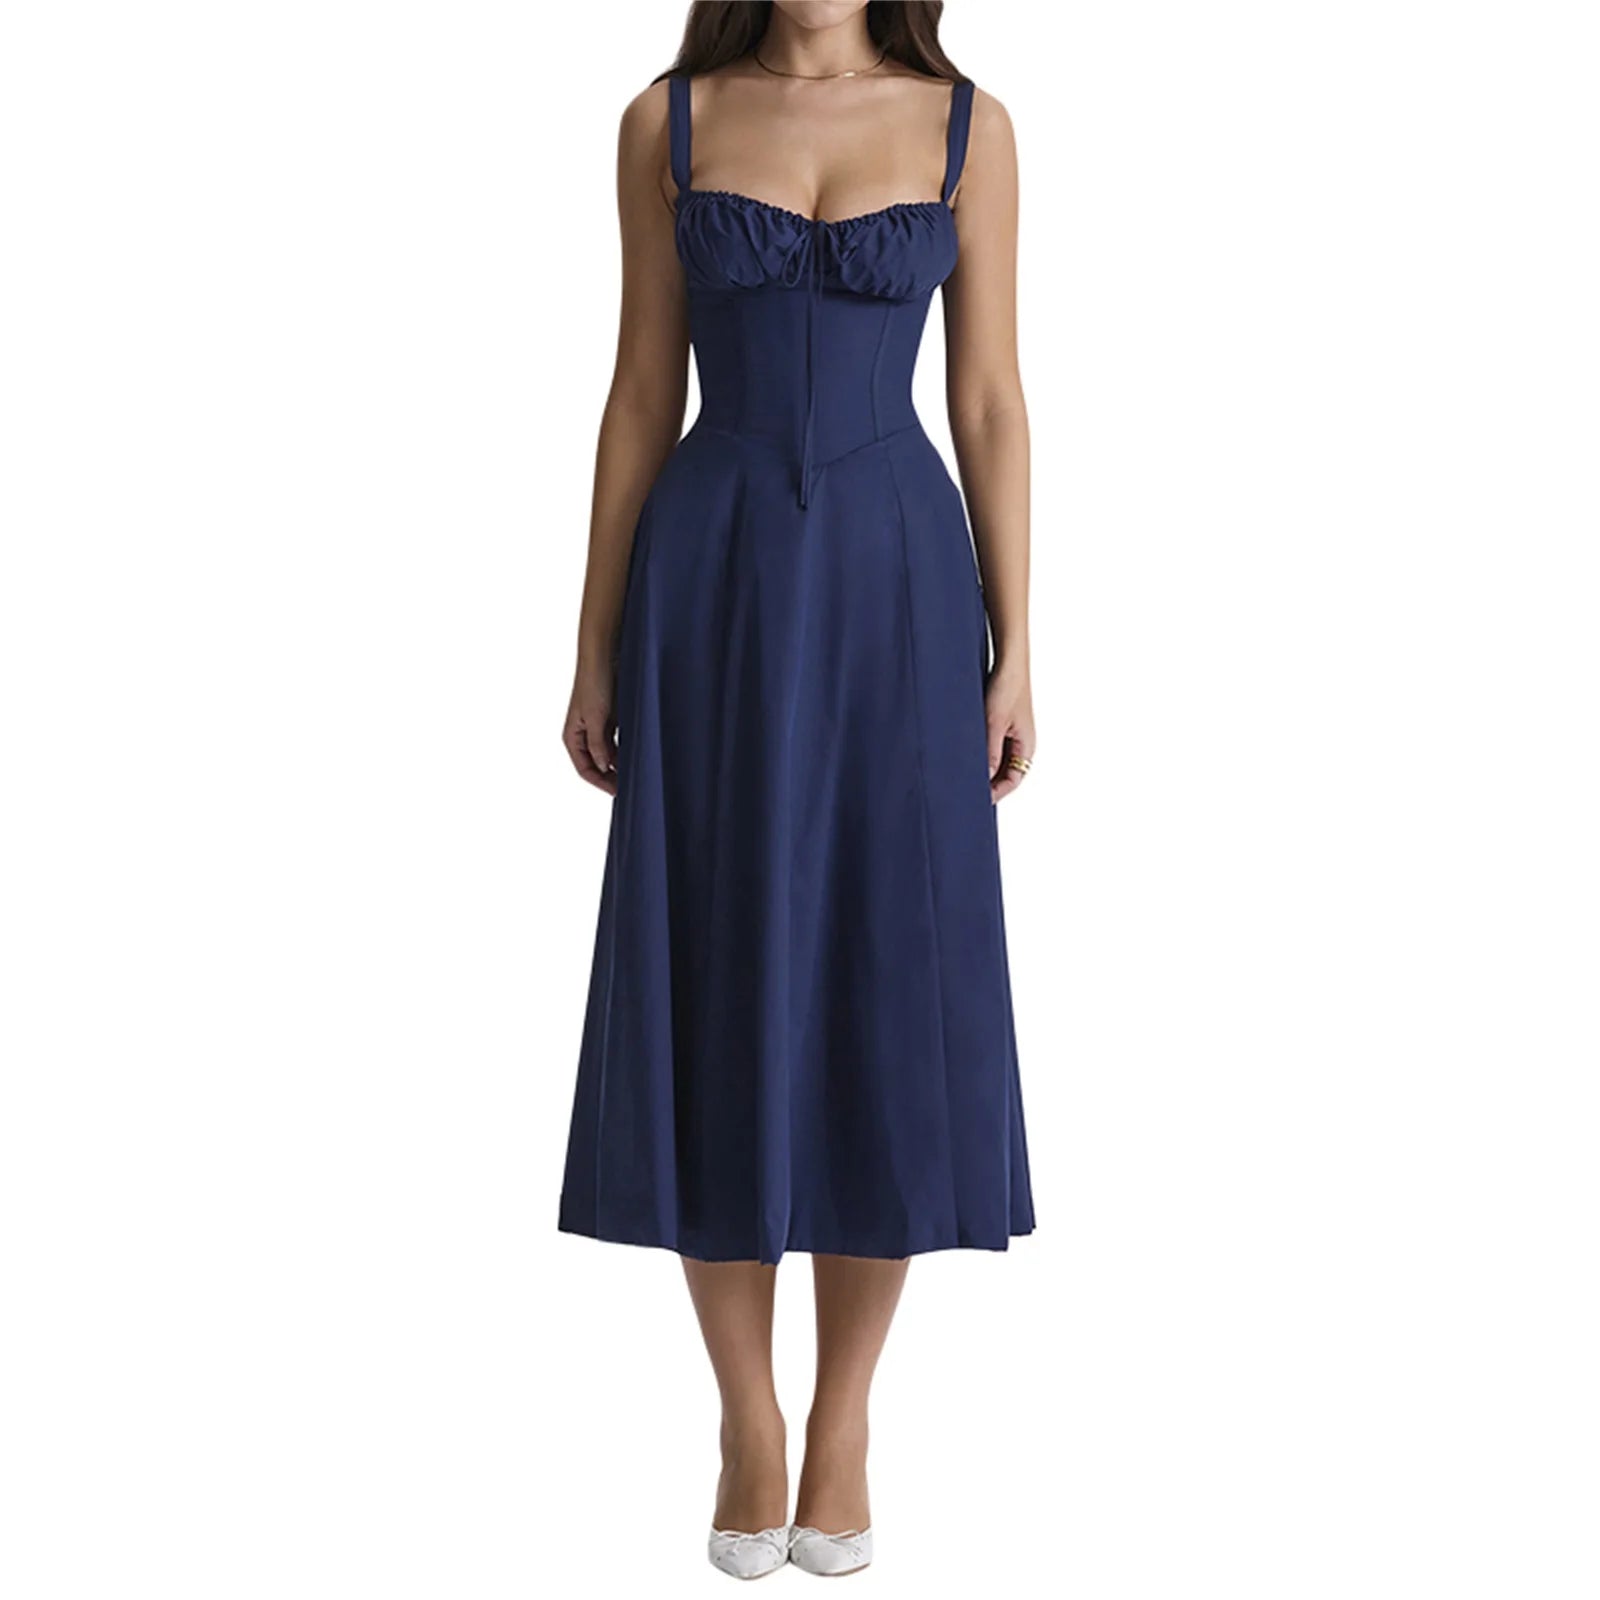 VastiVogue Women's Solid Sleeveless Summer Dress VestiVogue Blue L